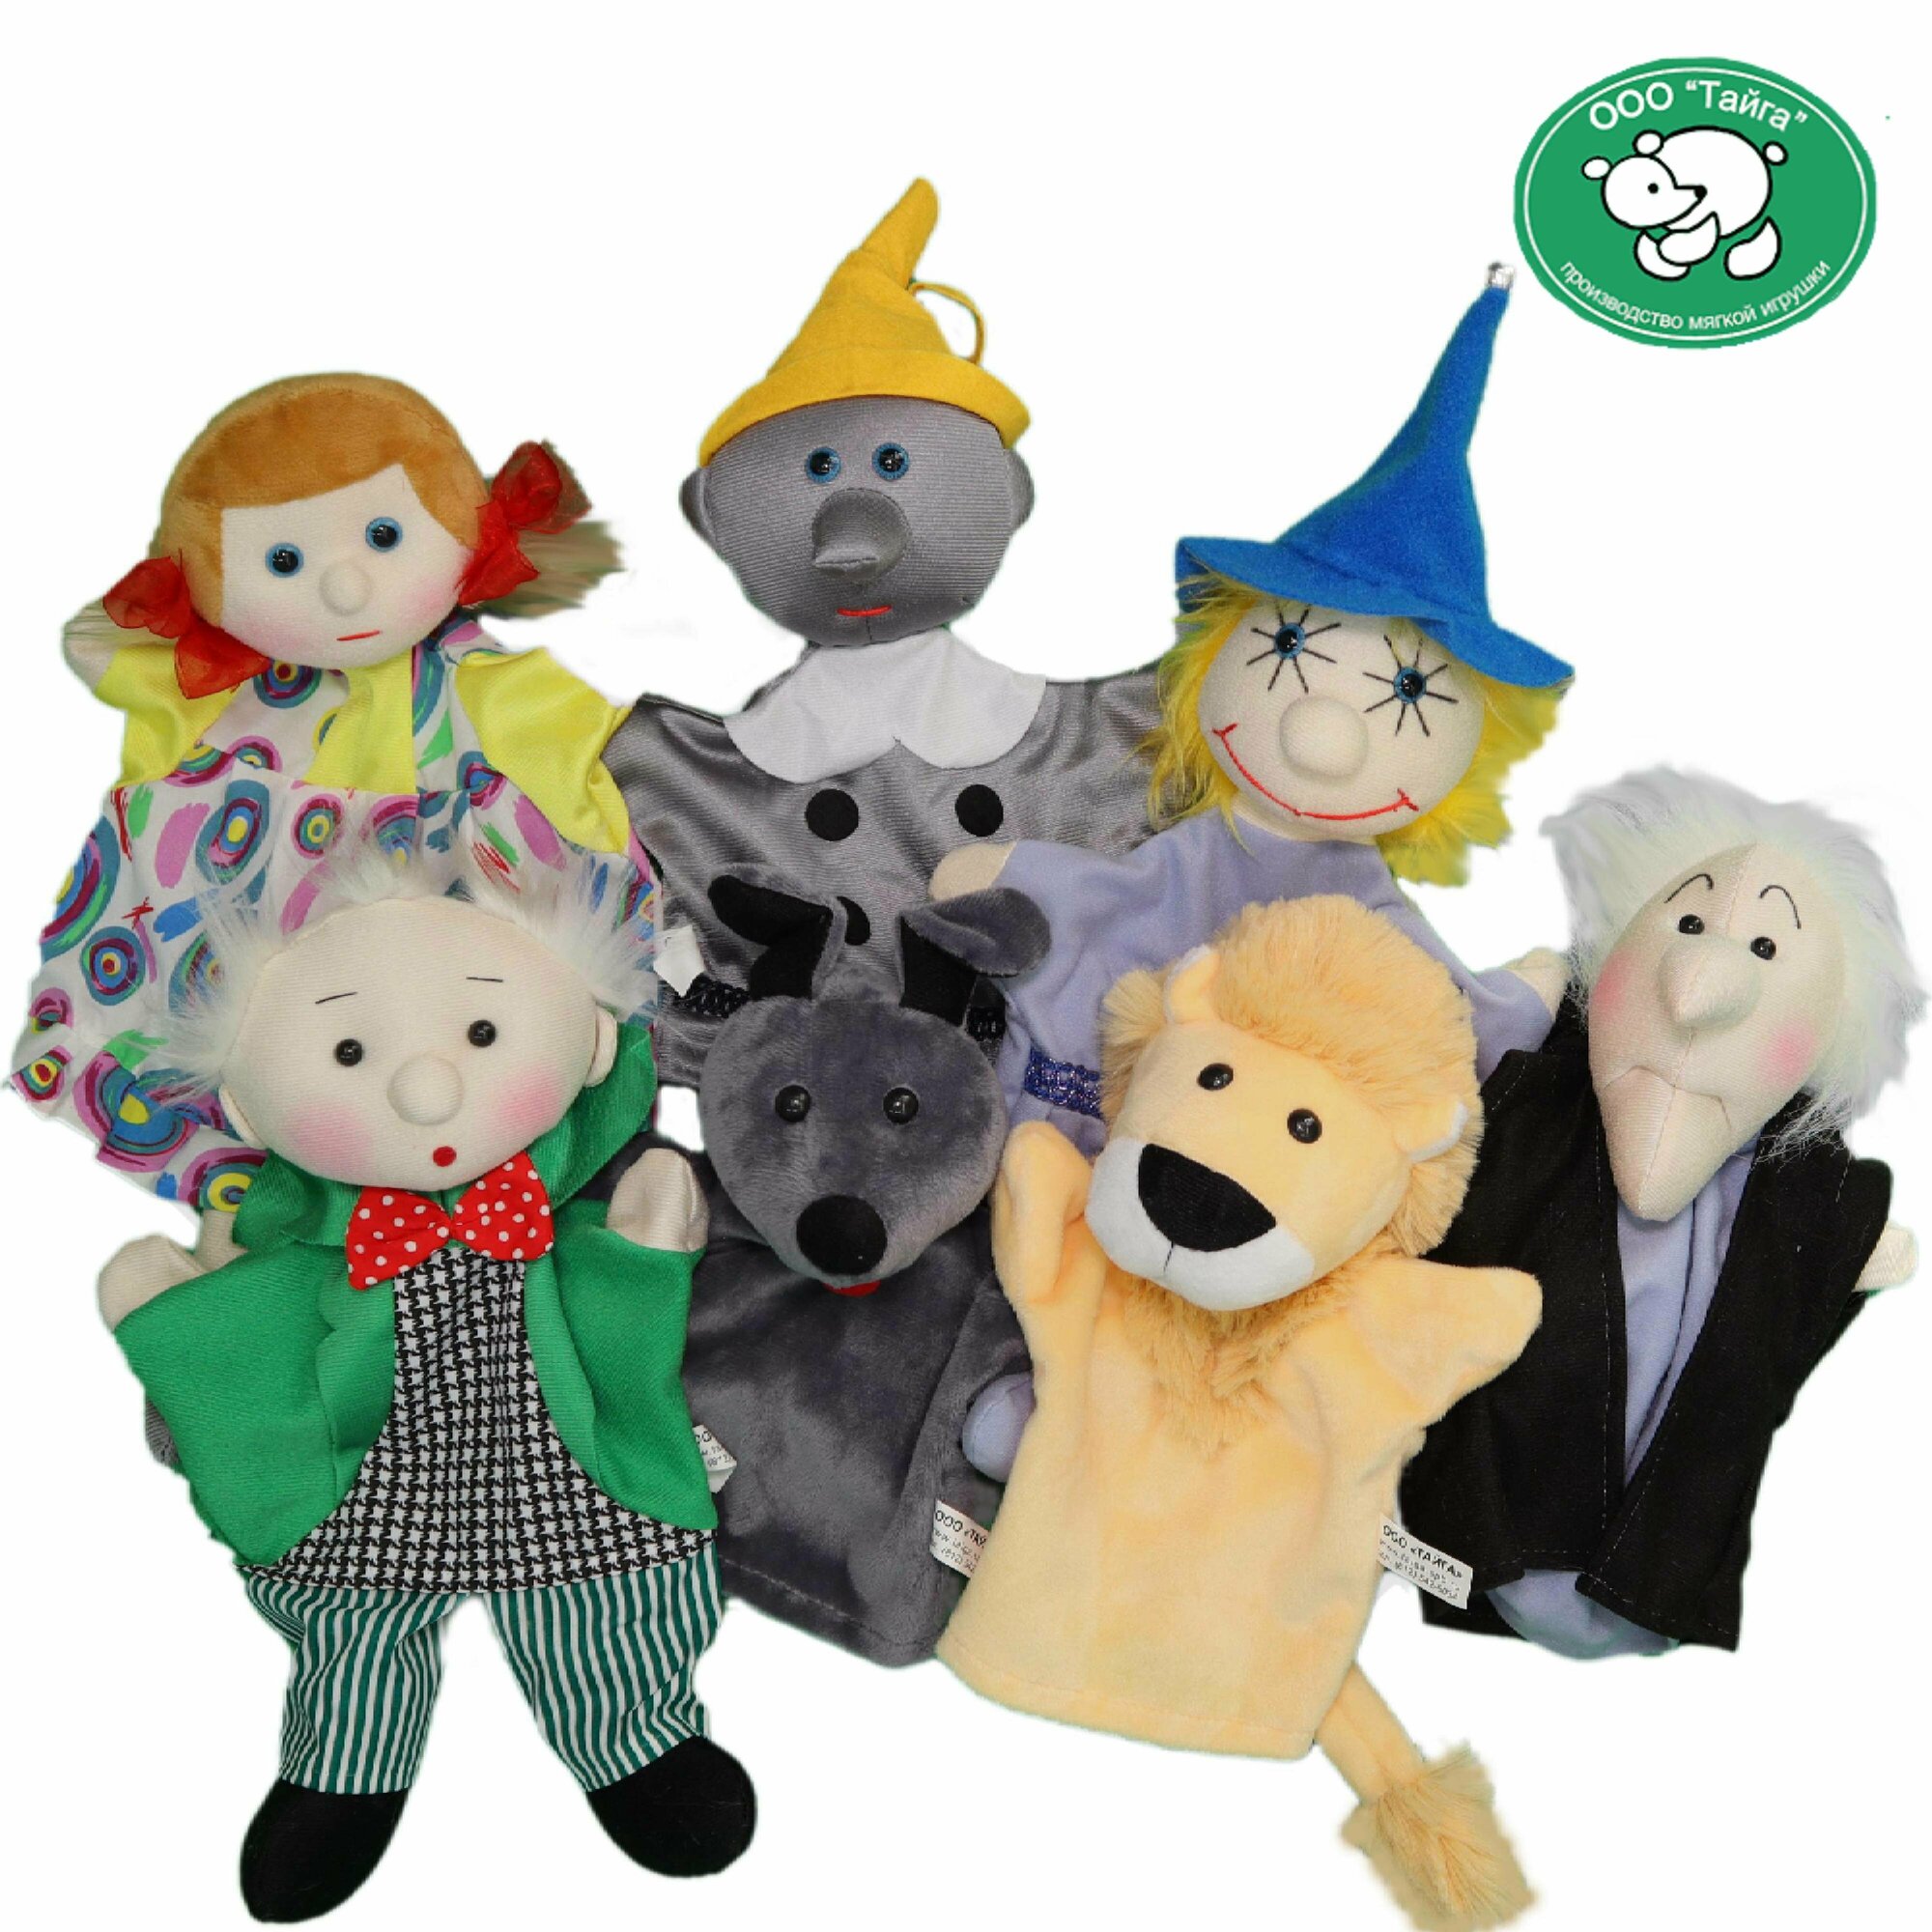 Набор мягких игрушек на руку "Тайга" для детского кукольного театра "Волшебник Изумрудного города", 7 кукол-перчаток